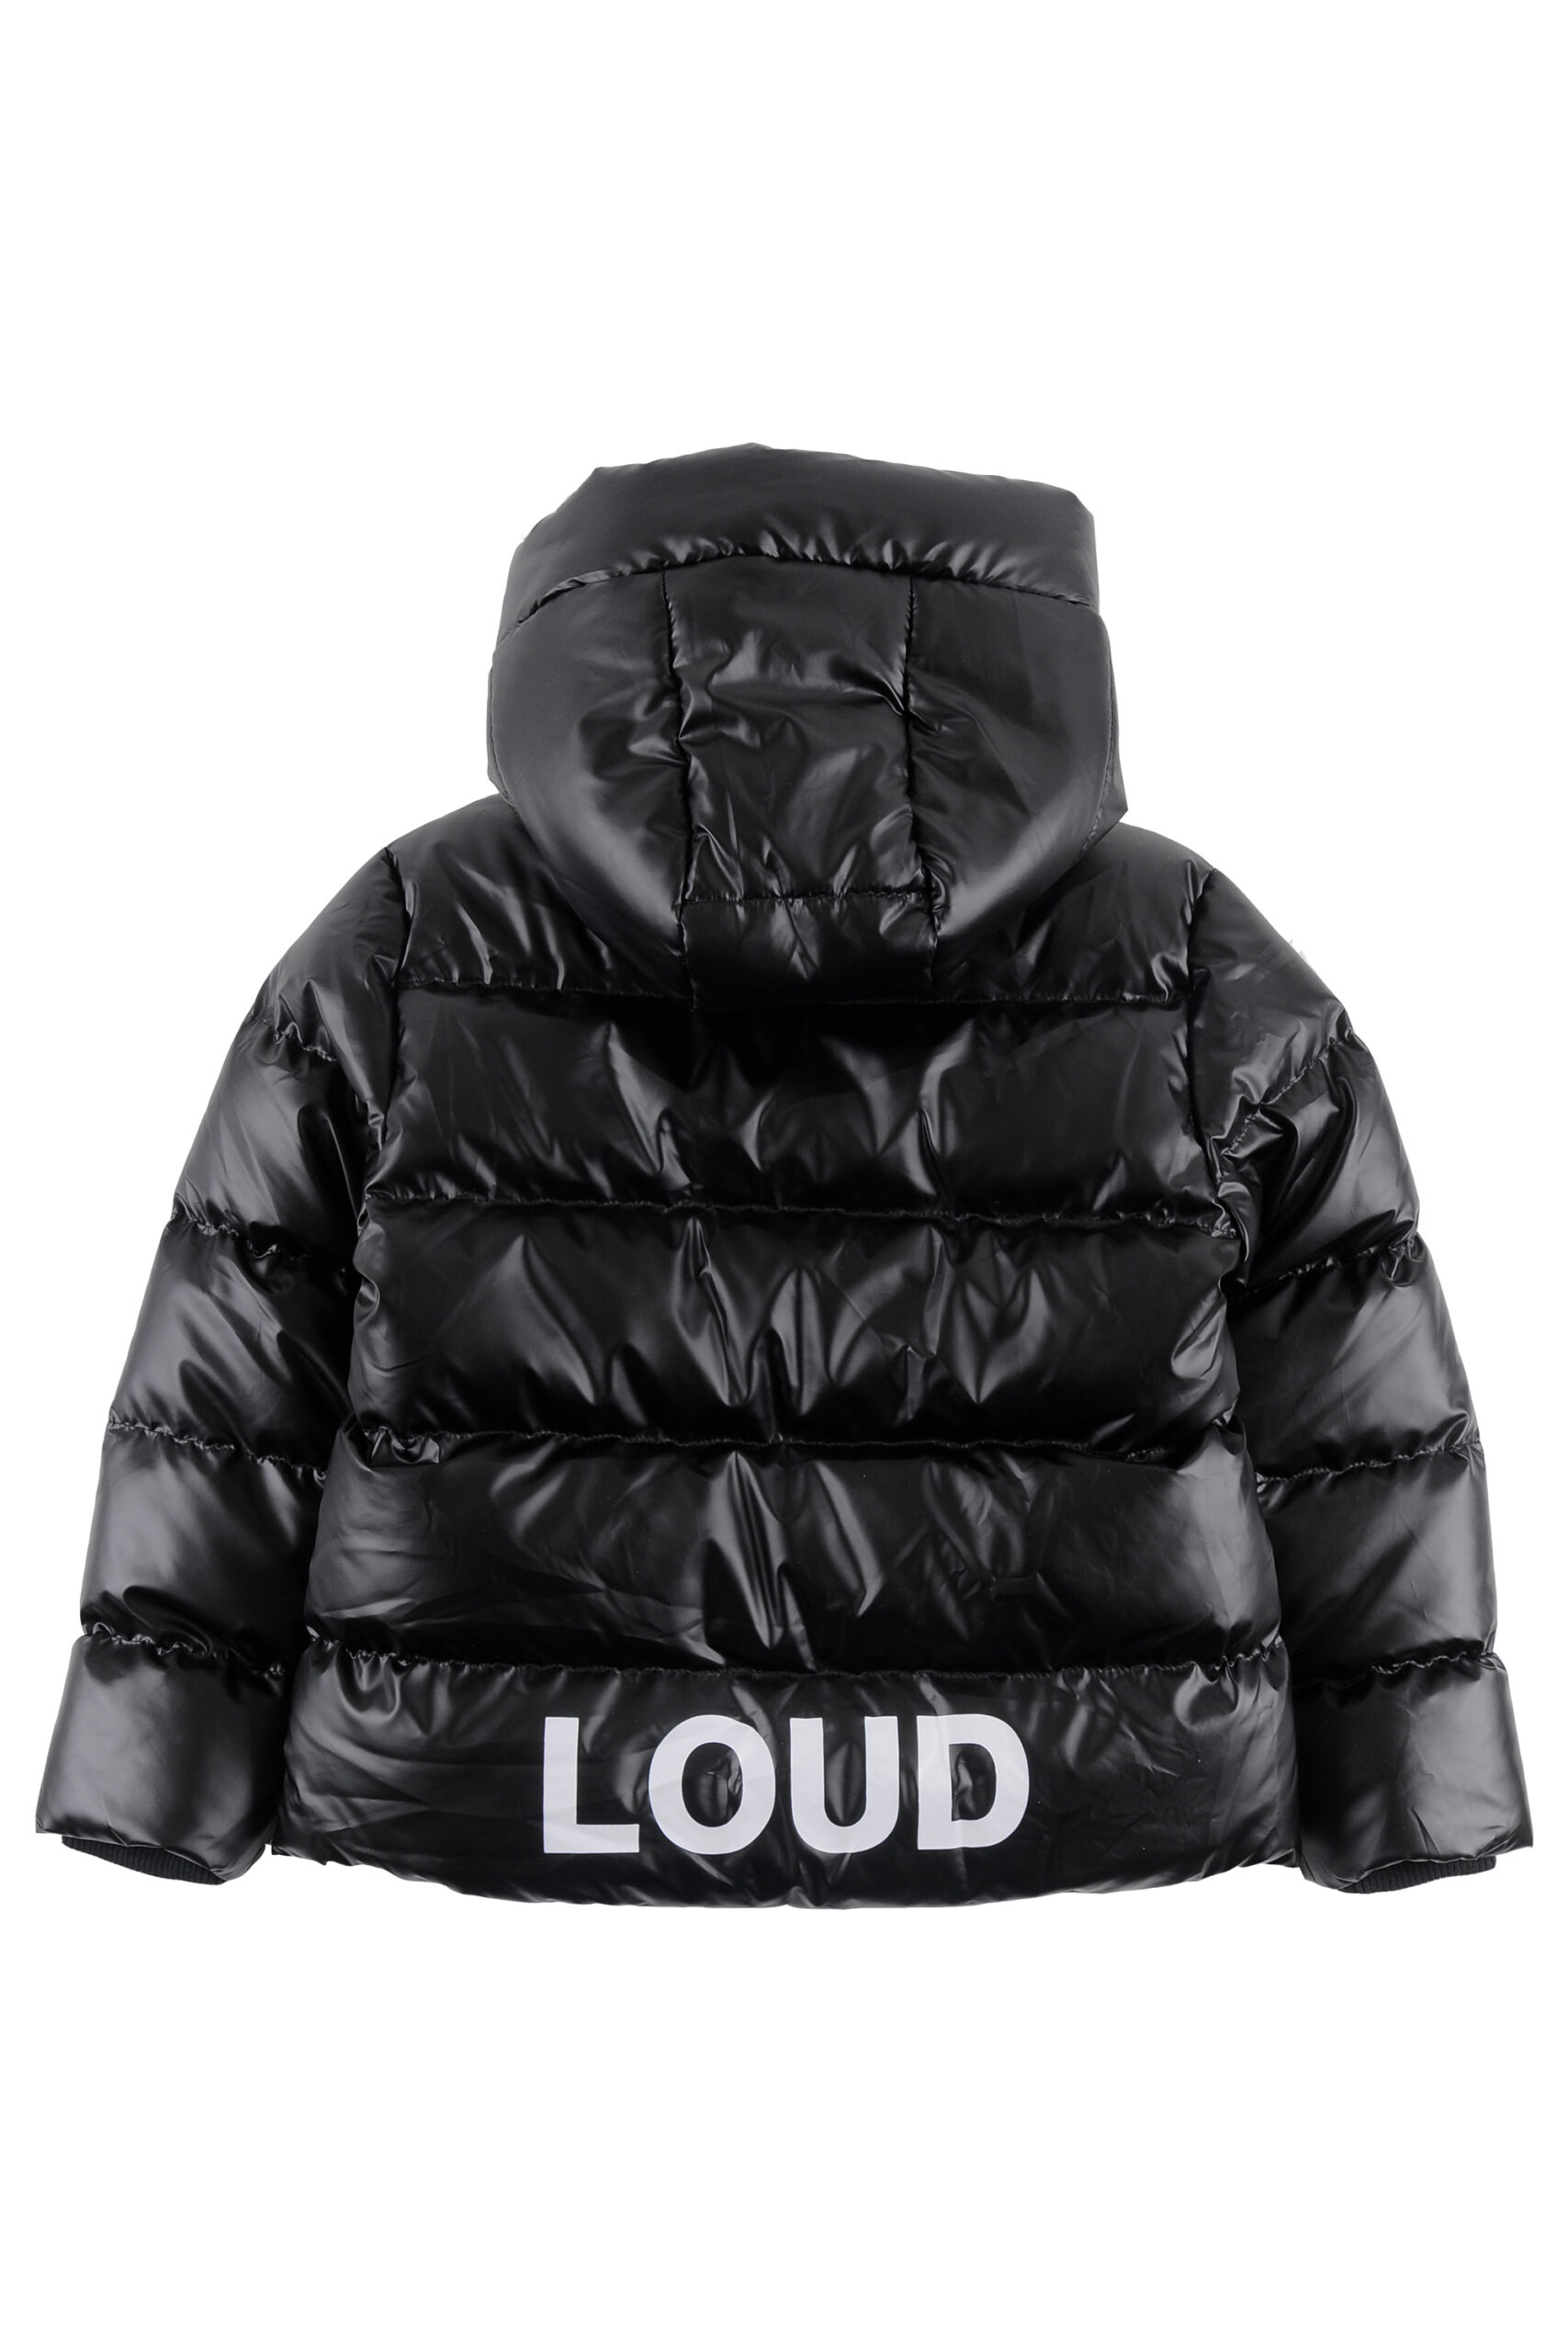 SKY - Black Unisex Outerwear Hooded Jacket - Loud Apparel